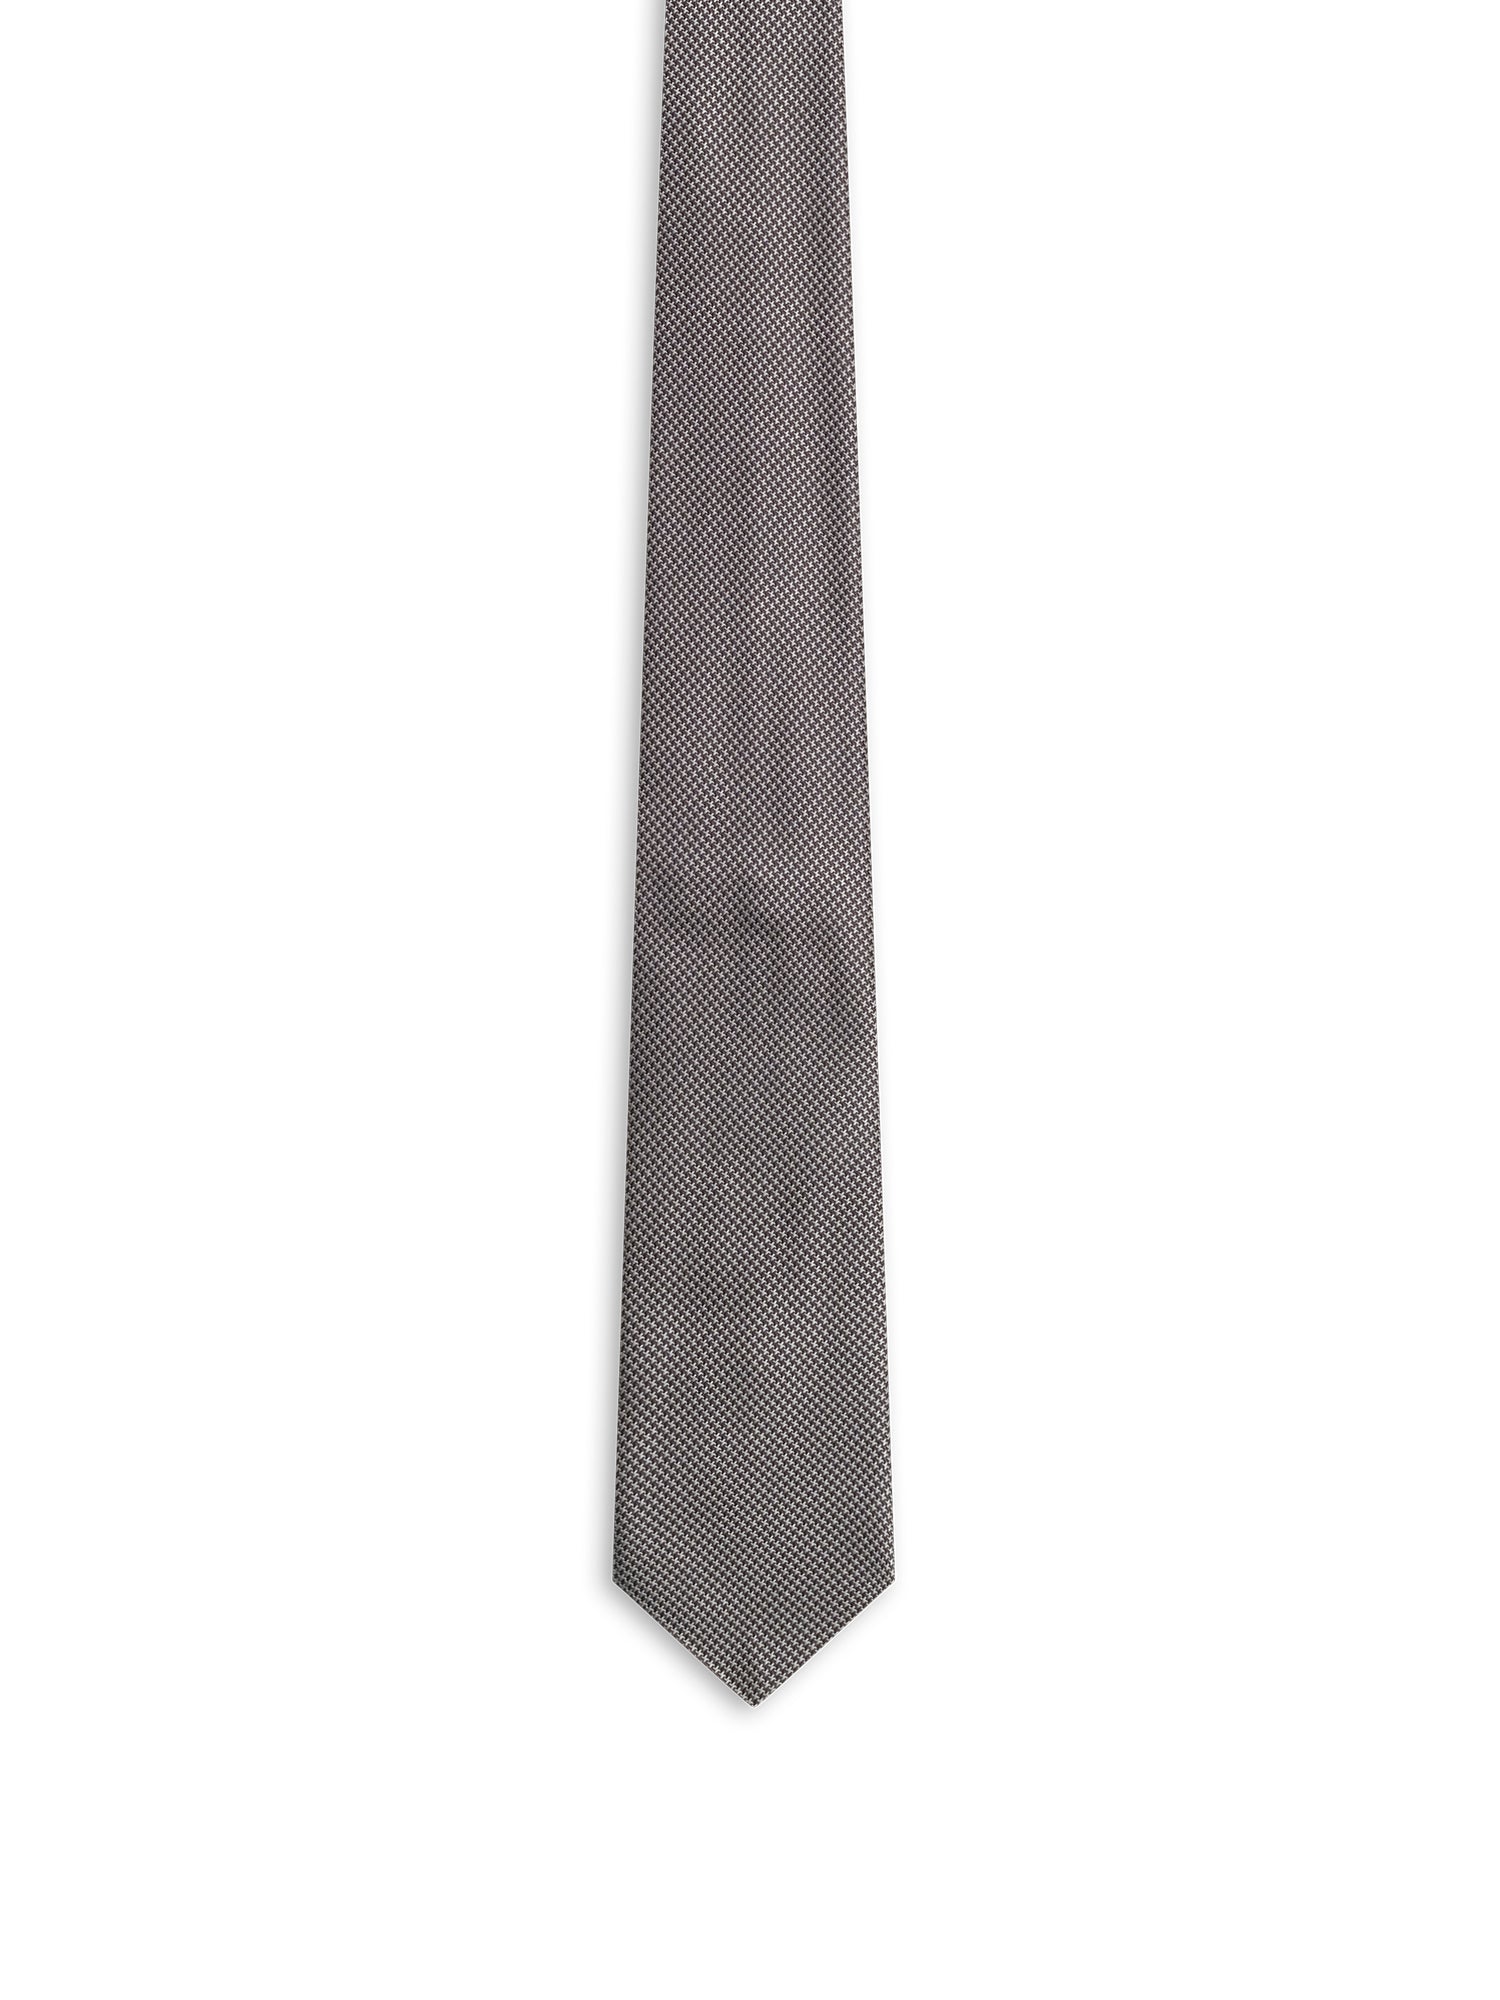 Garibaldi Tie